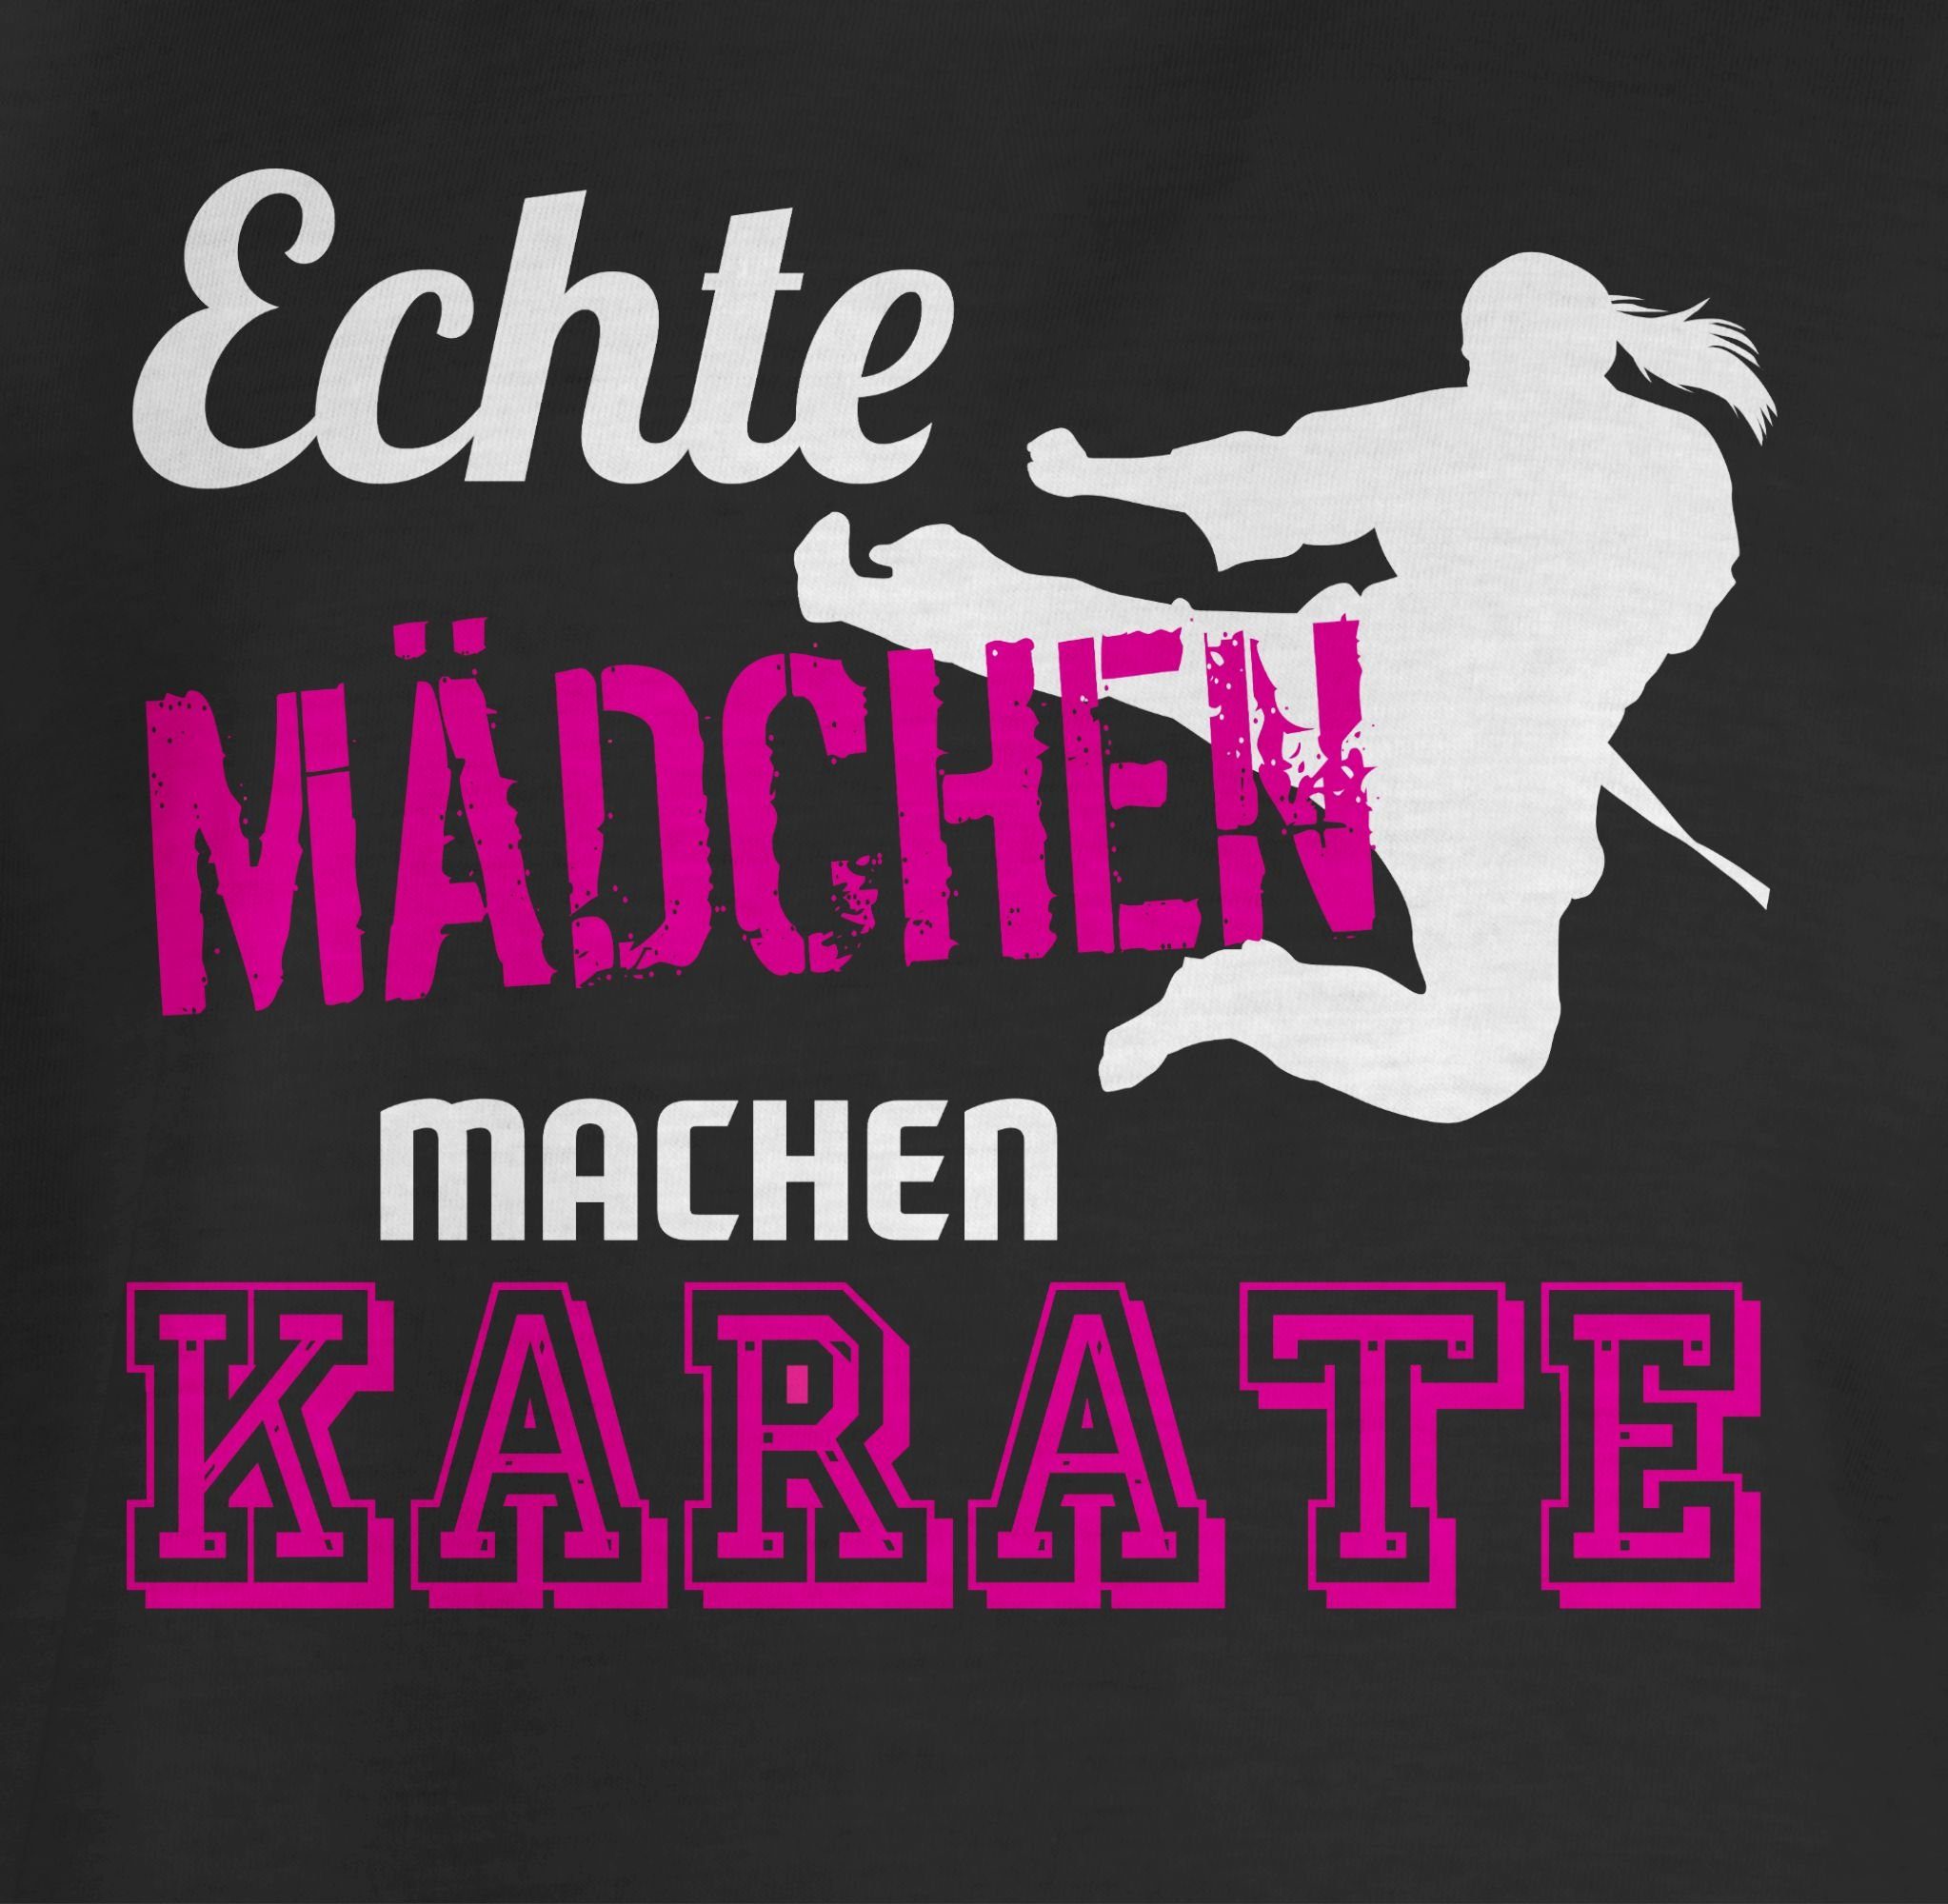 Echte Mädchen Sport Kleidung Shirtracer Karate Schwarz T-Shirt Kinder 1 machen